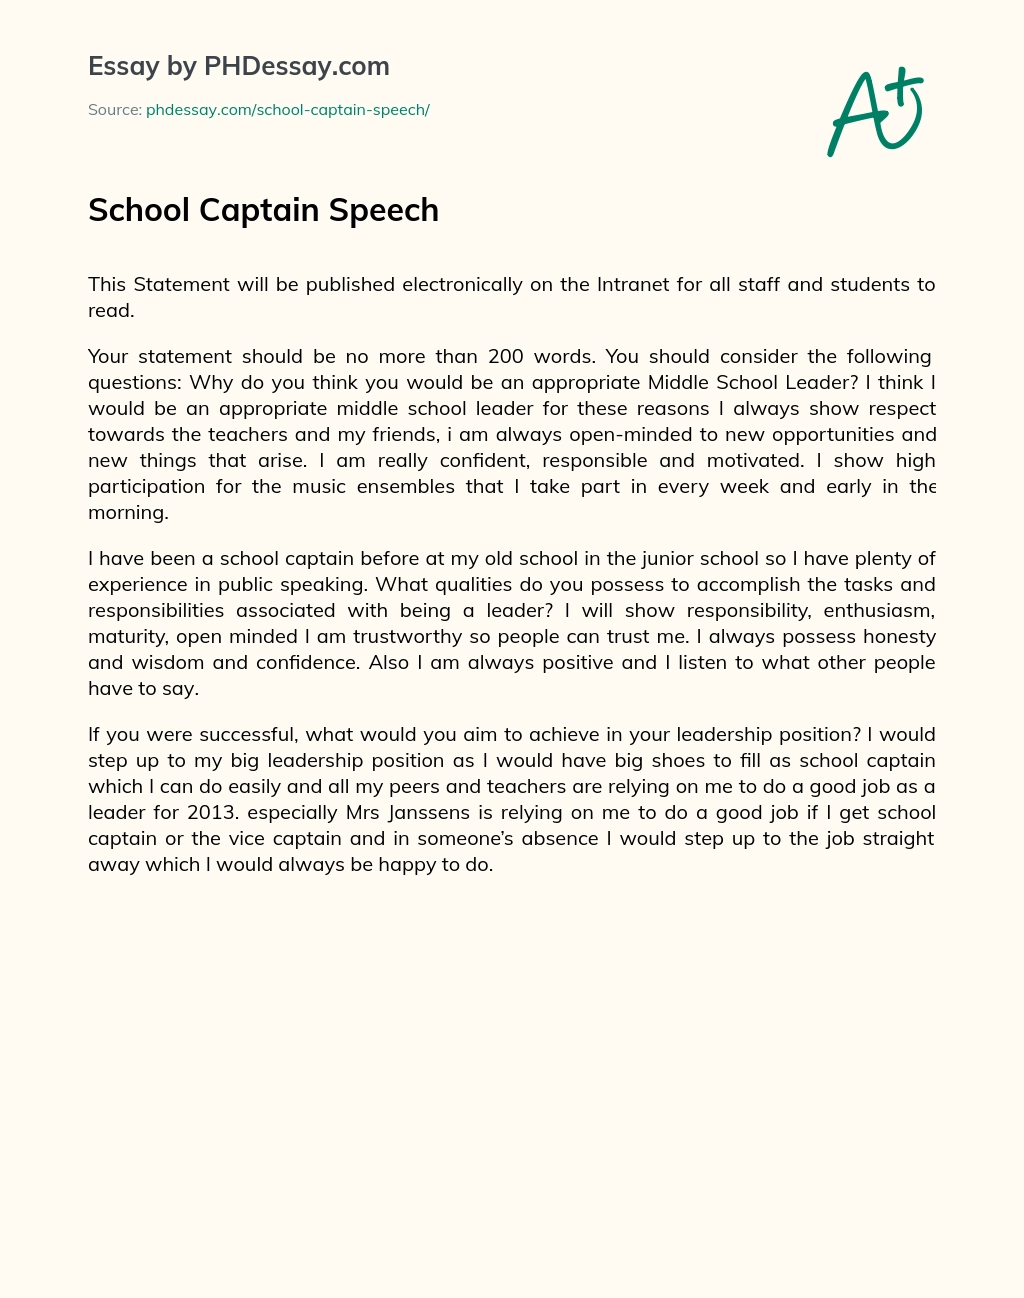 School Captain Speech essay